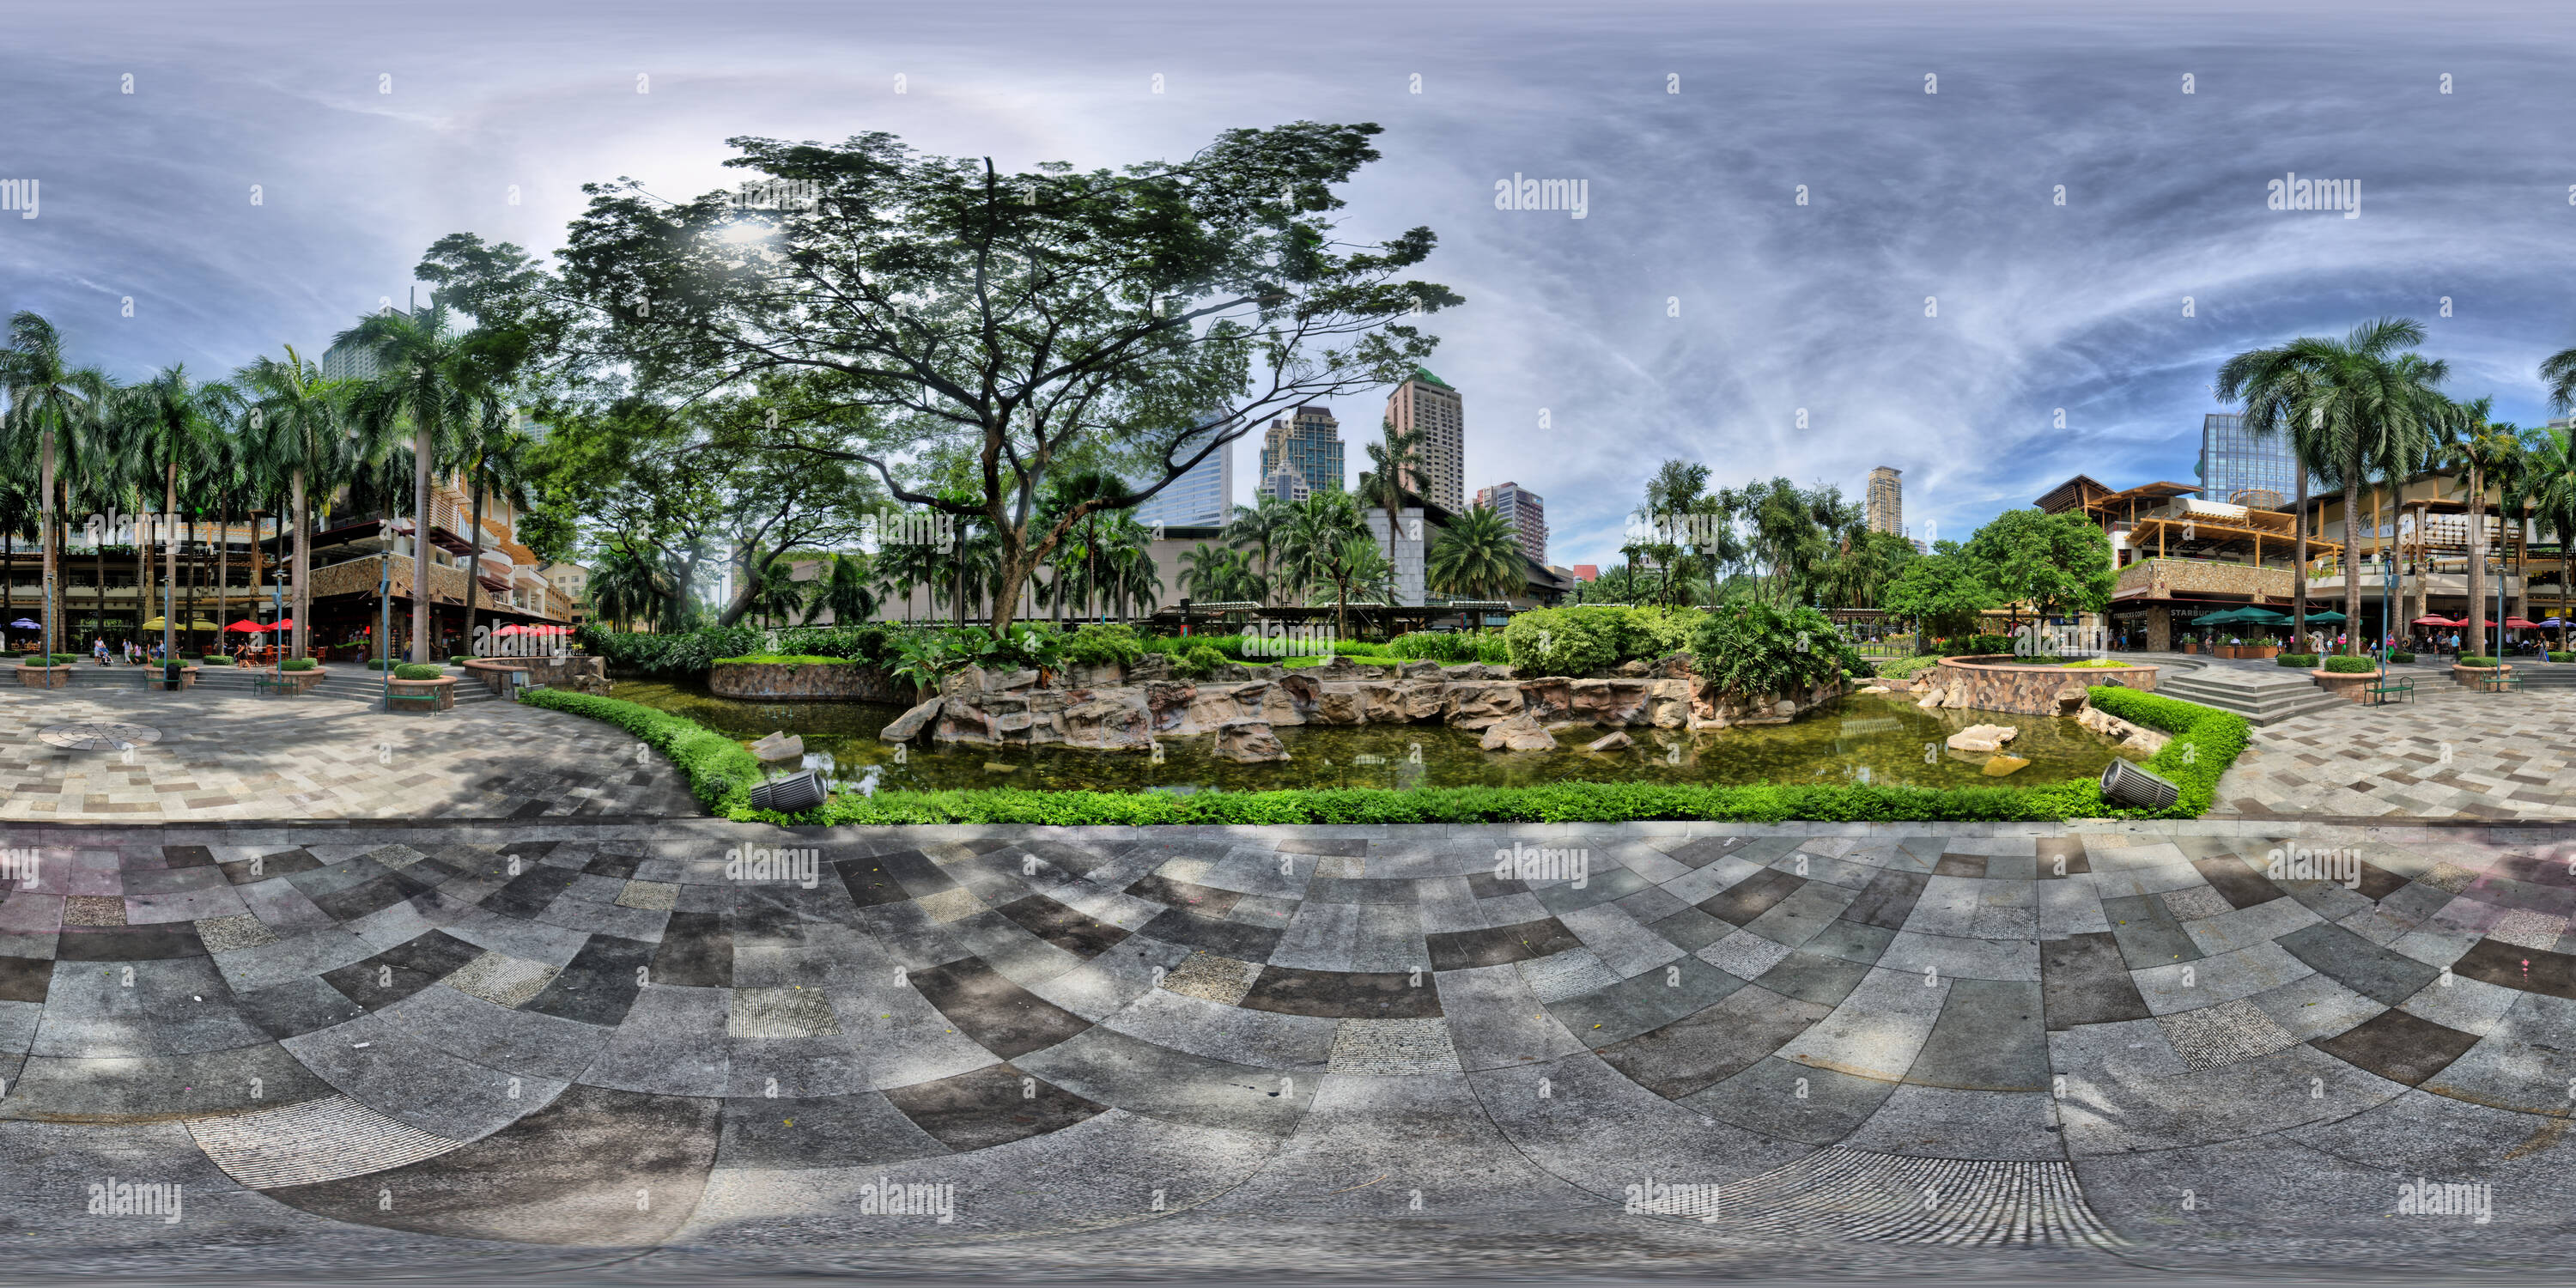 Vue panoramique à 360° de Ceinture verte Mall